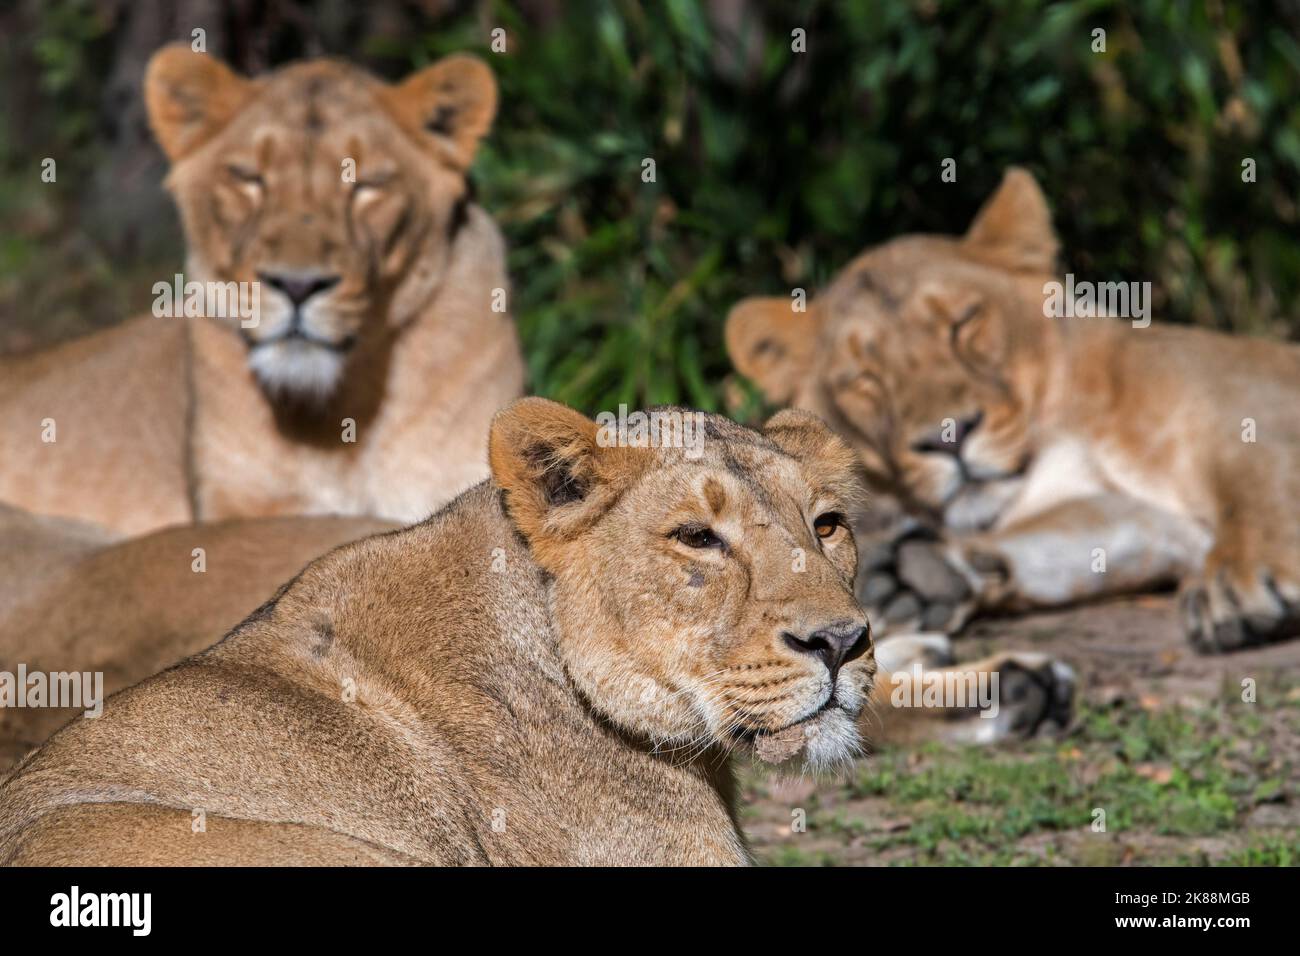 Orgullo de los leones asiáticos / león de Gir (Panthera leo persica) con las lionesses/hembras en reposo, nativas de la India Foto de stock